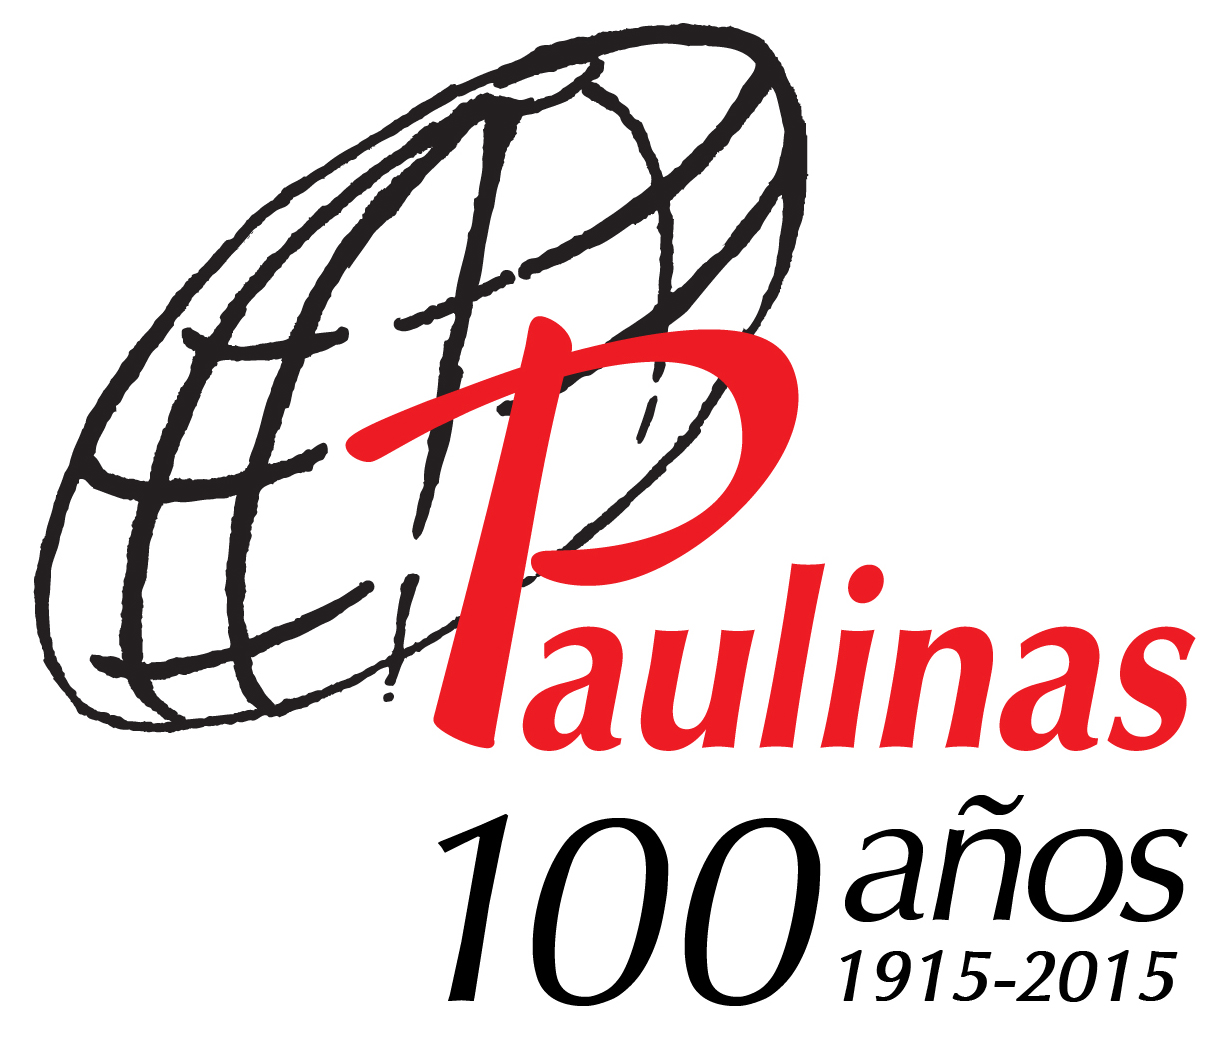 Paulinas Mexico